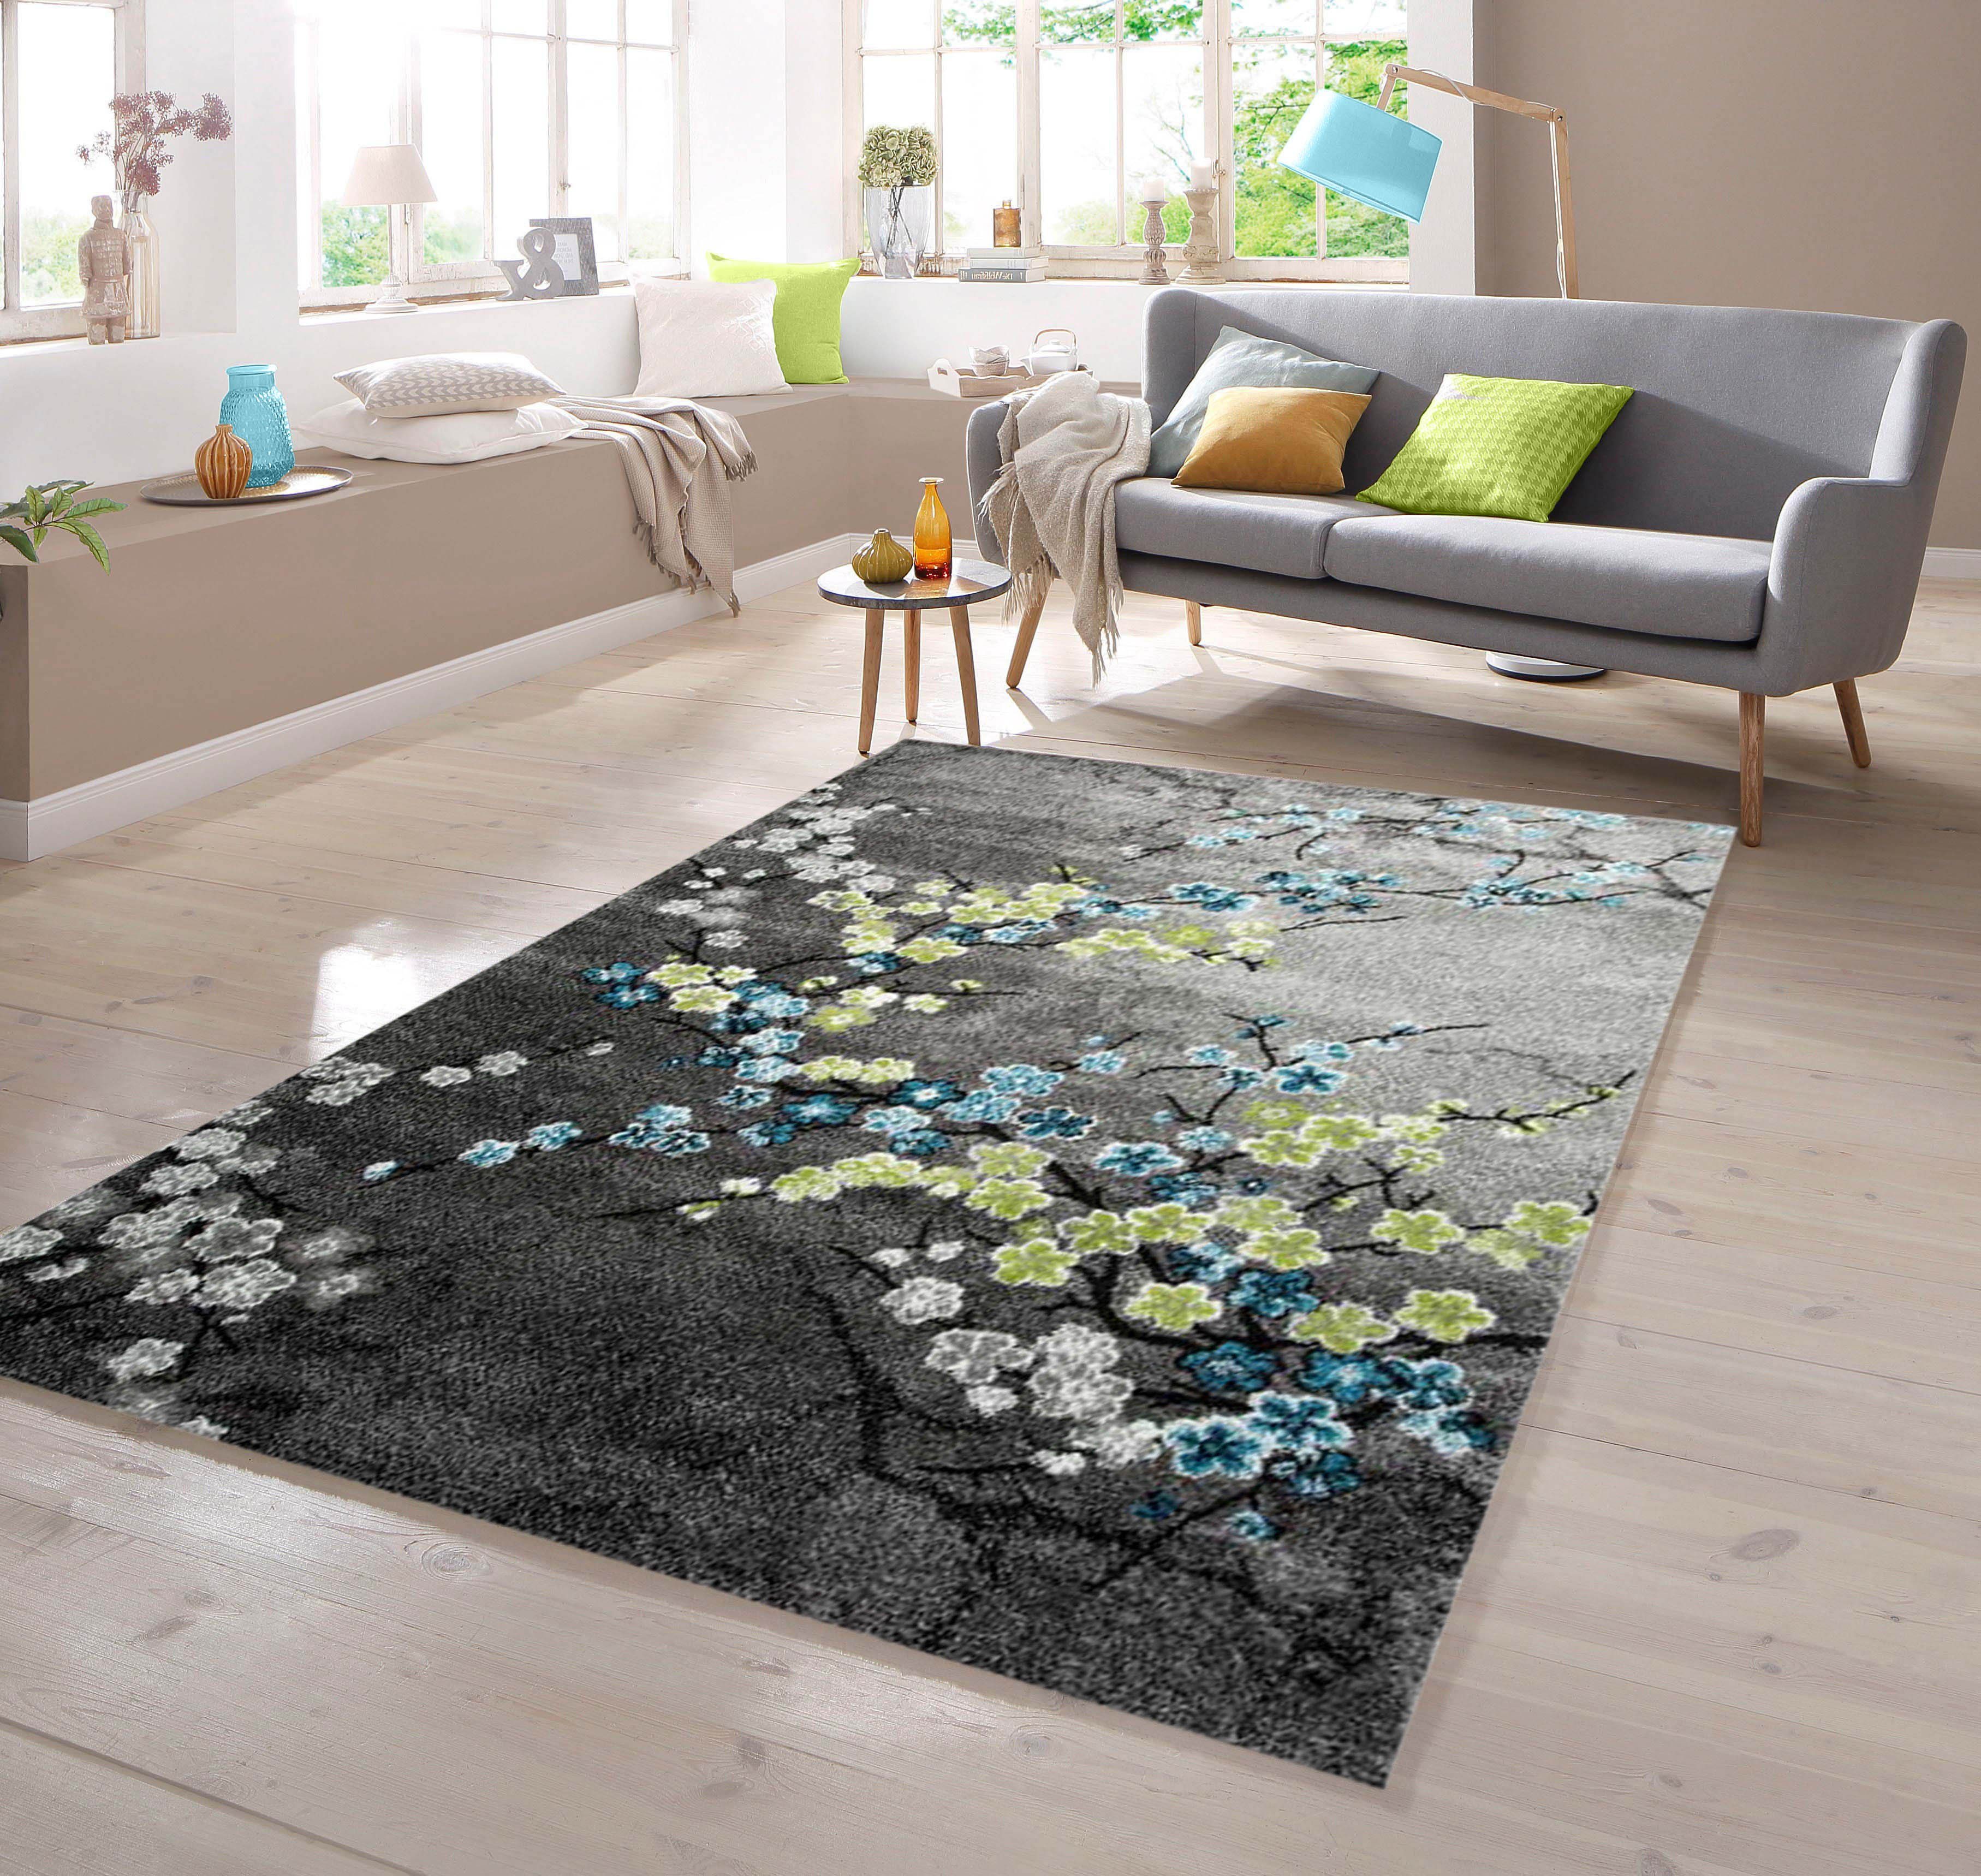 Teppich Designer Teppich Grau TeppichHome24, Blumenmotiv mit Grün, Türkis rechteckig